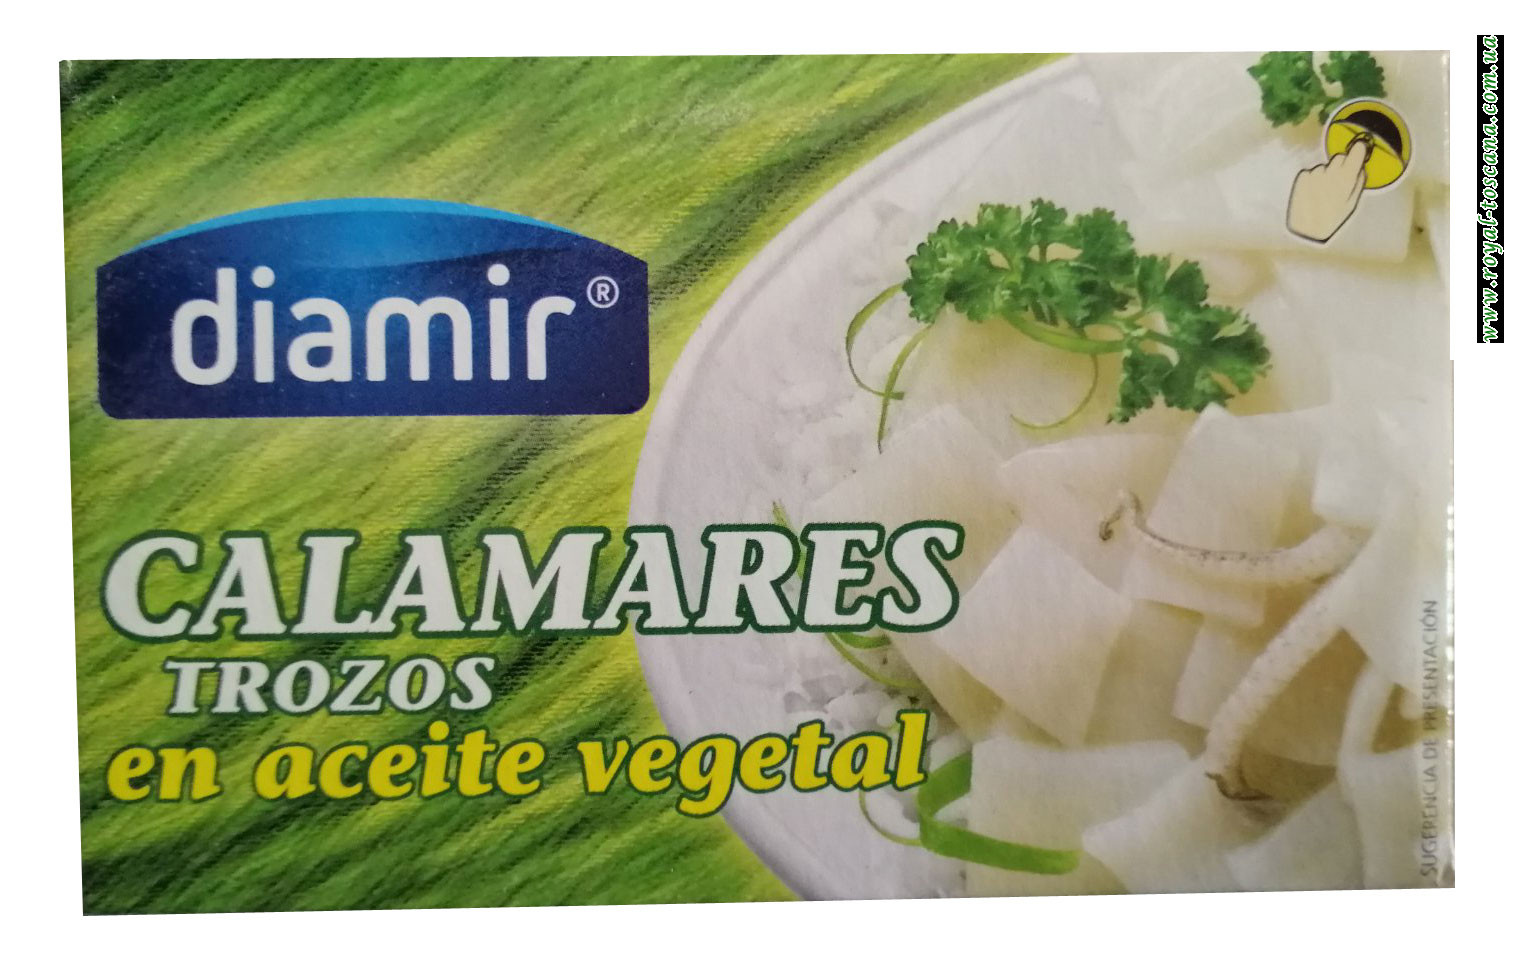 Кальмар в подсолнечном масле Diamir Calamares trozos en aceite vegetal 110г